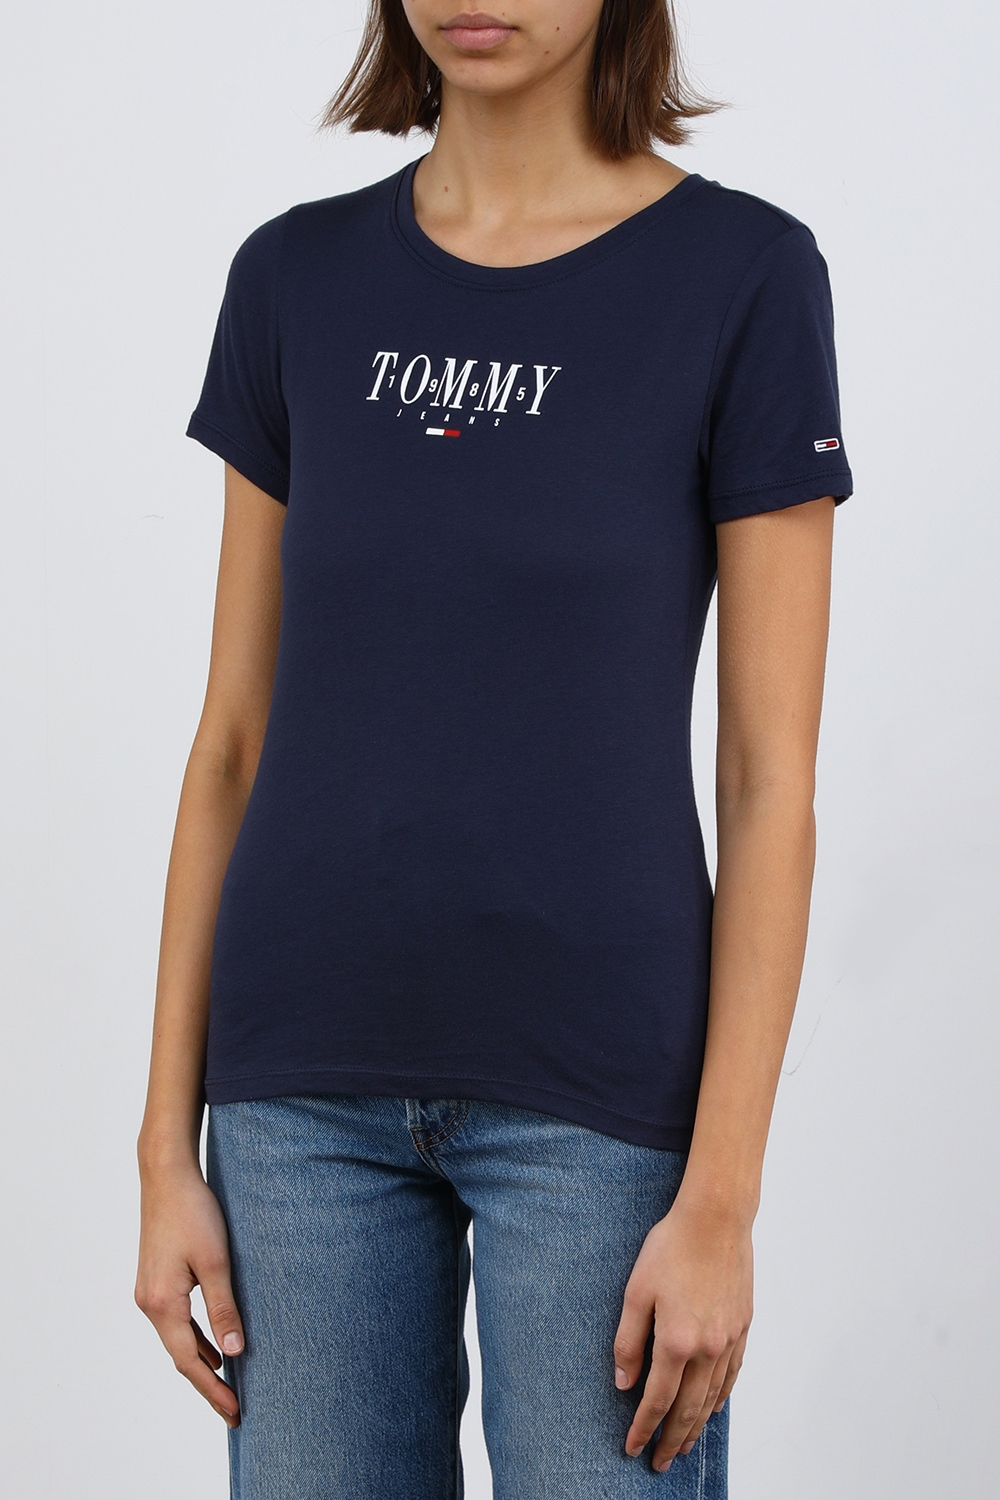 חולצת טי כחולה עם הדפס לוגו TOMMY HILFIGER